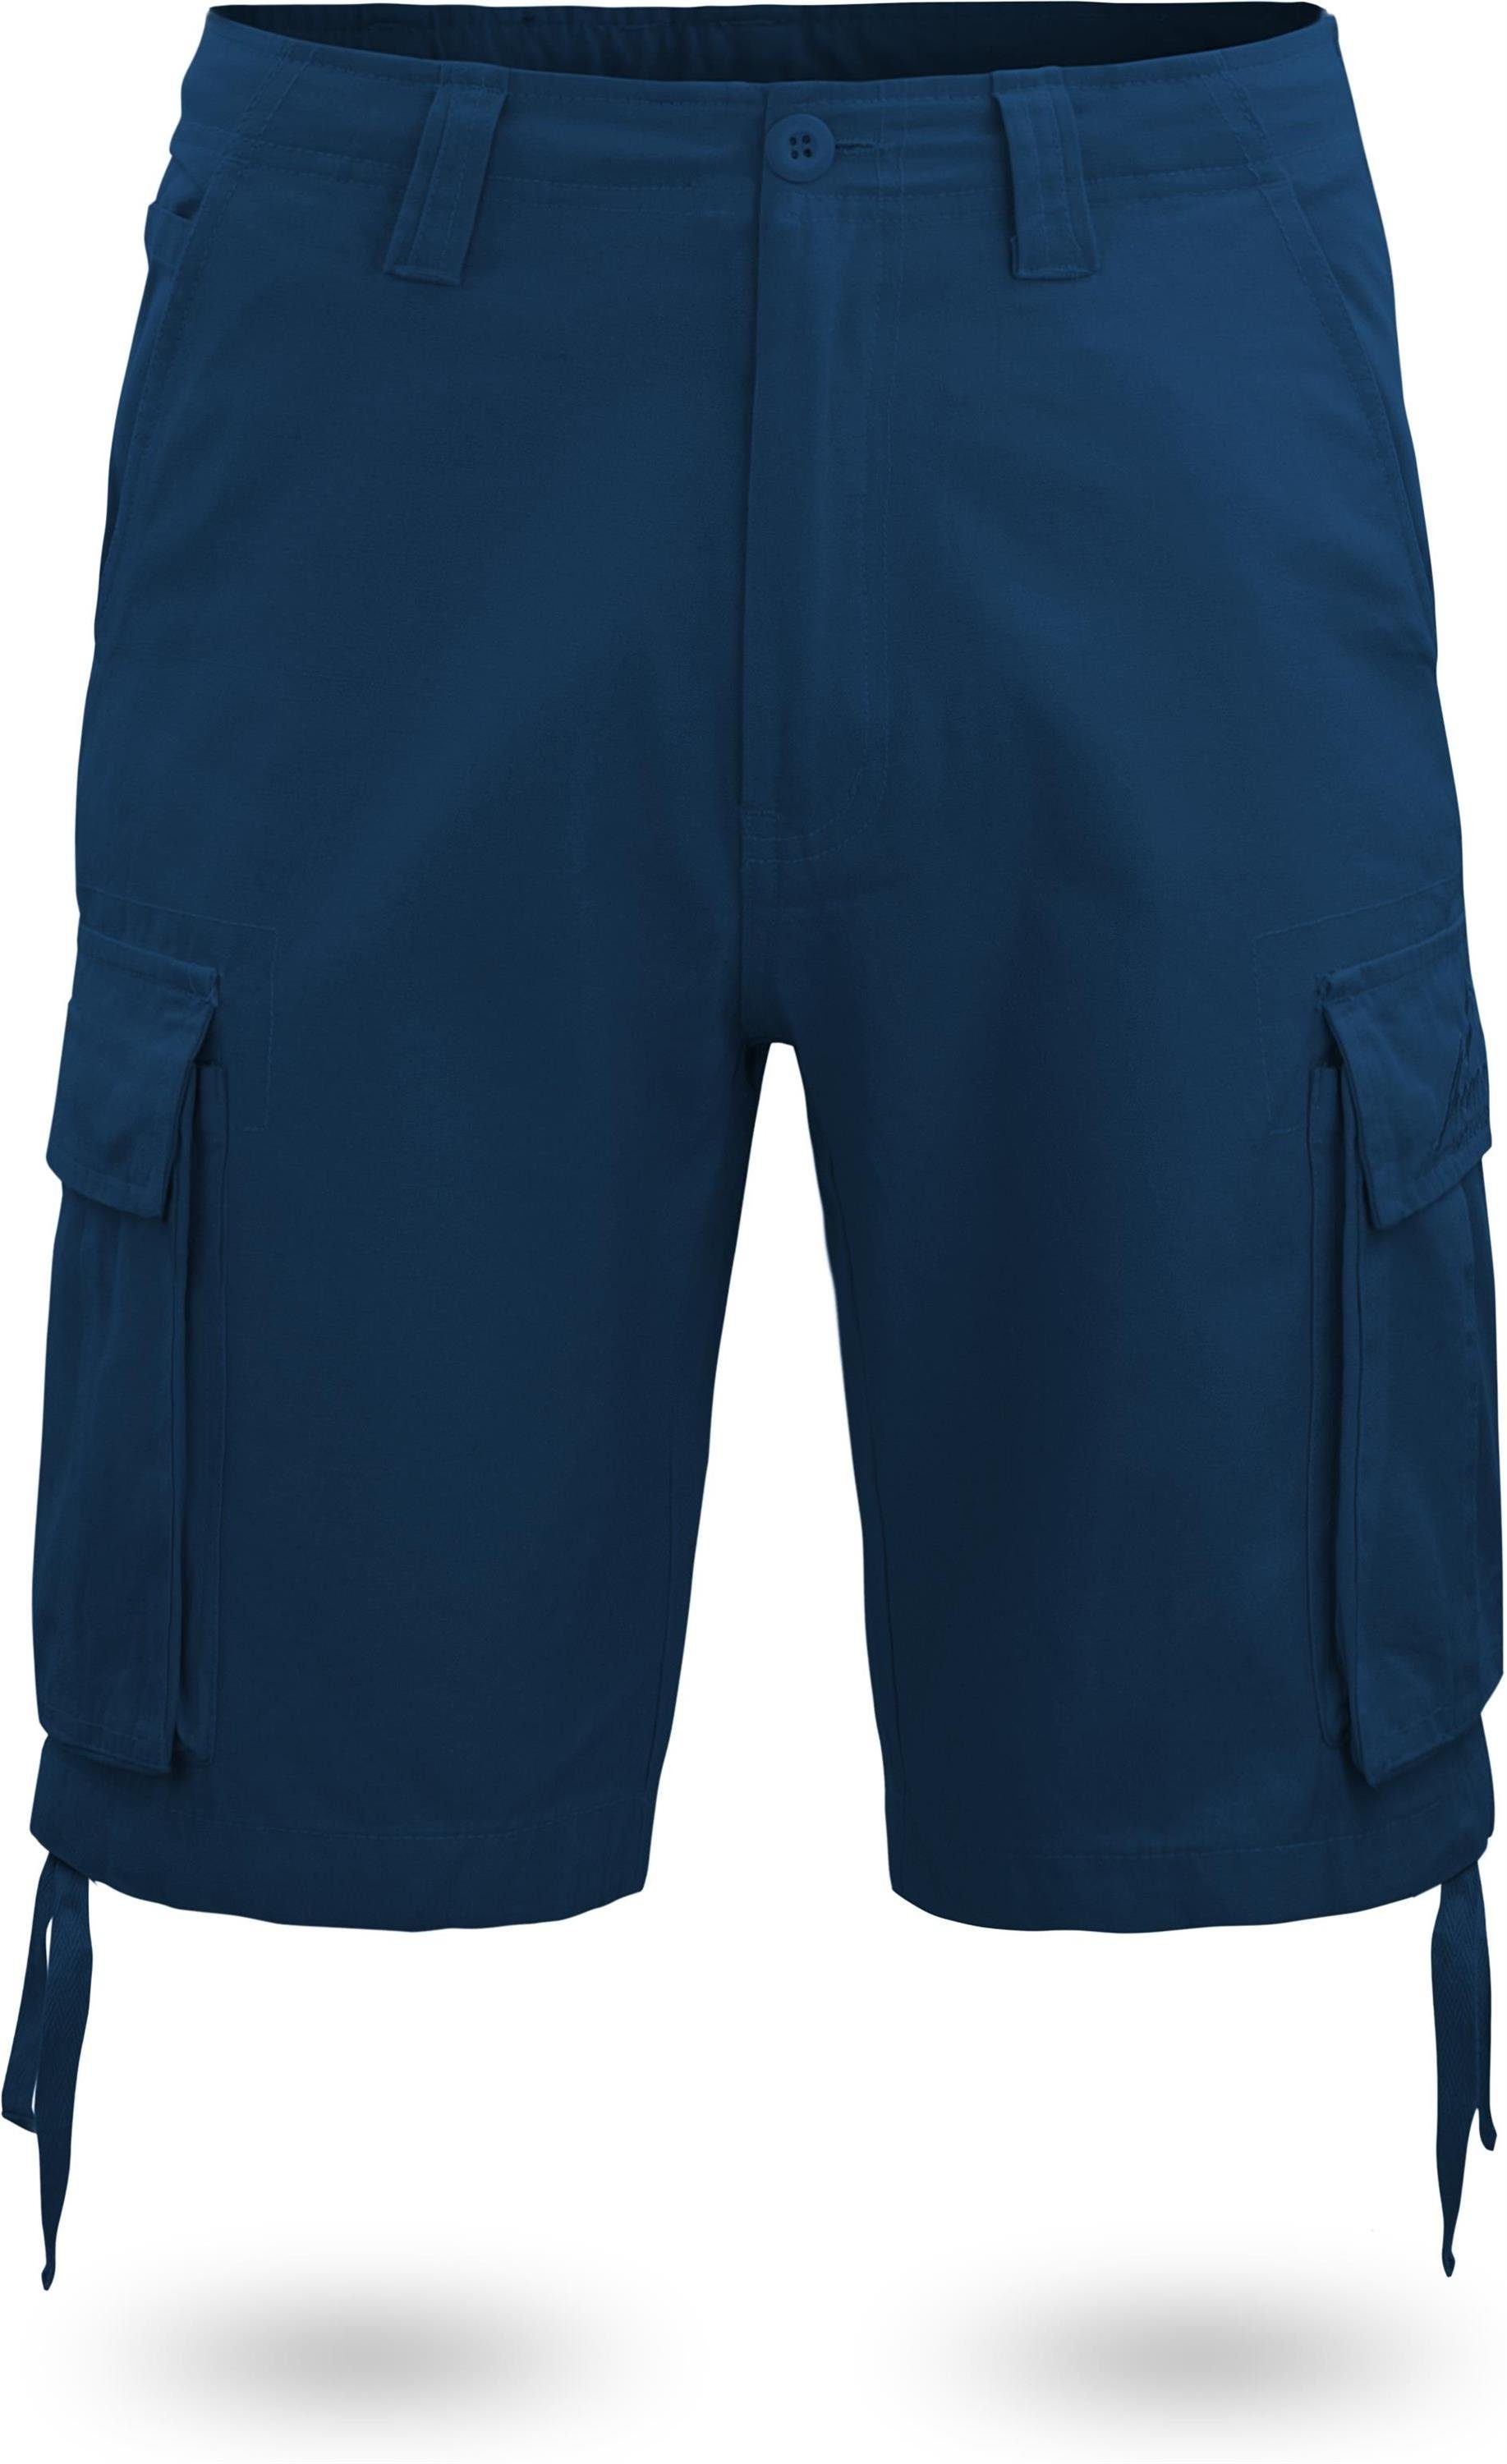 normani Bermudas Herren Shorts Kalahari Vintage 100% Sommershorts Navy Shorts Bio-Baumwolle aus mit Cargotaschen kurze